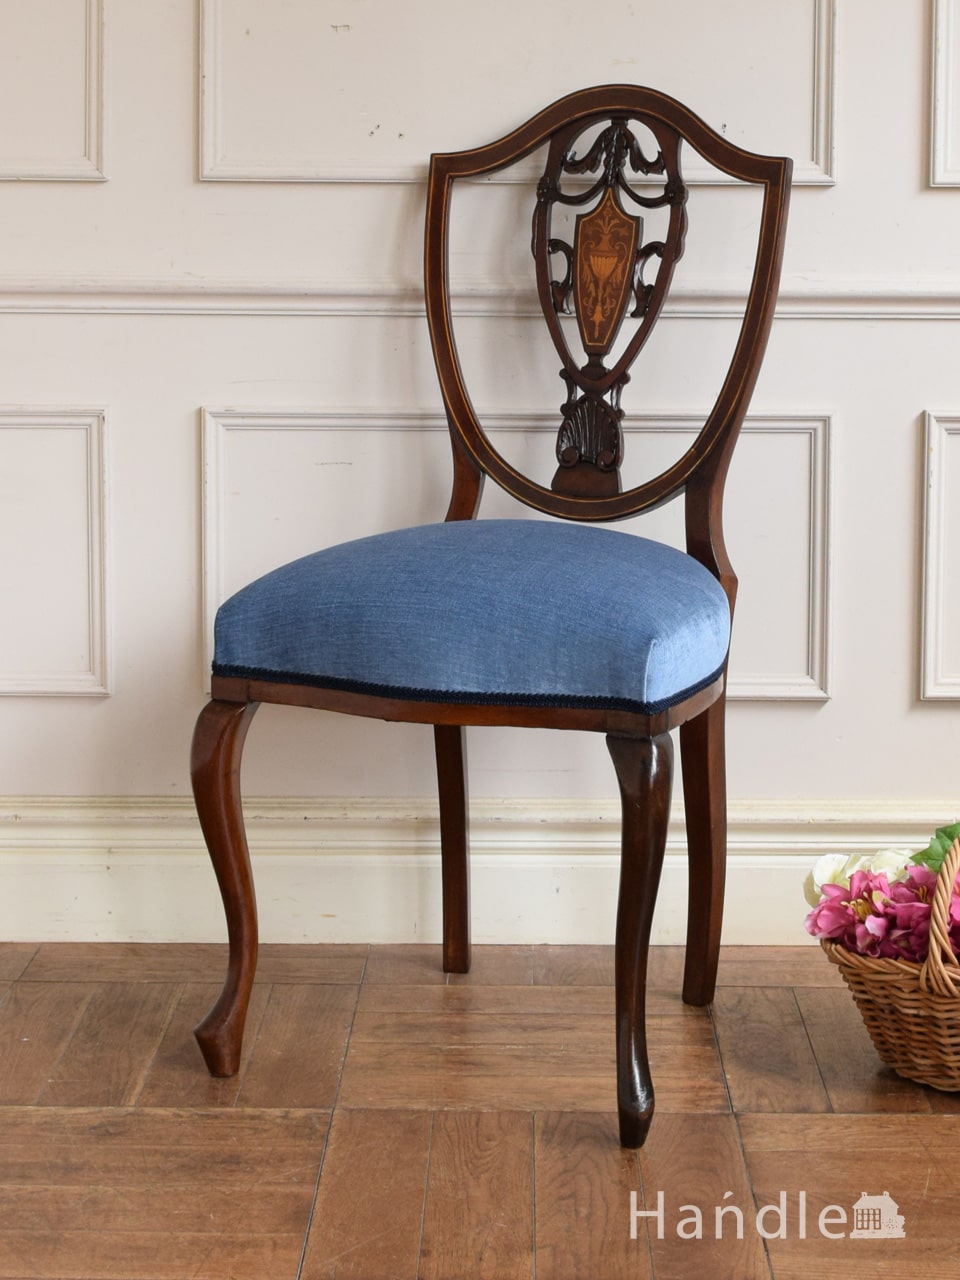 ヘップルホワイトがデザインしたアンティークの椅子、象嵌細工が入った背もたれのヘップルホワイトチェア